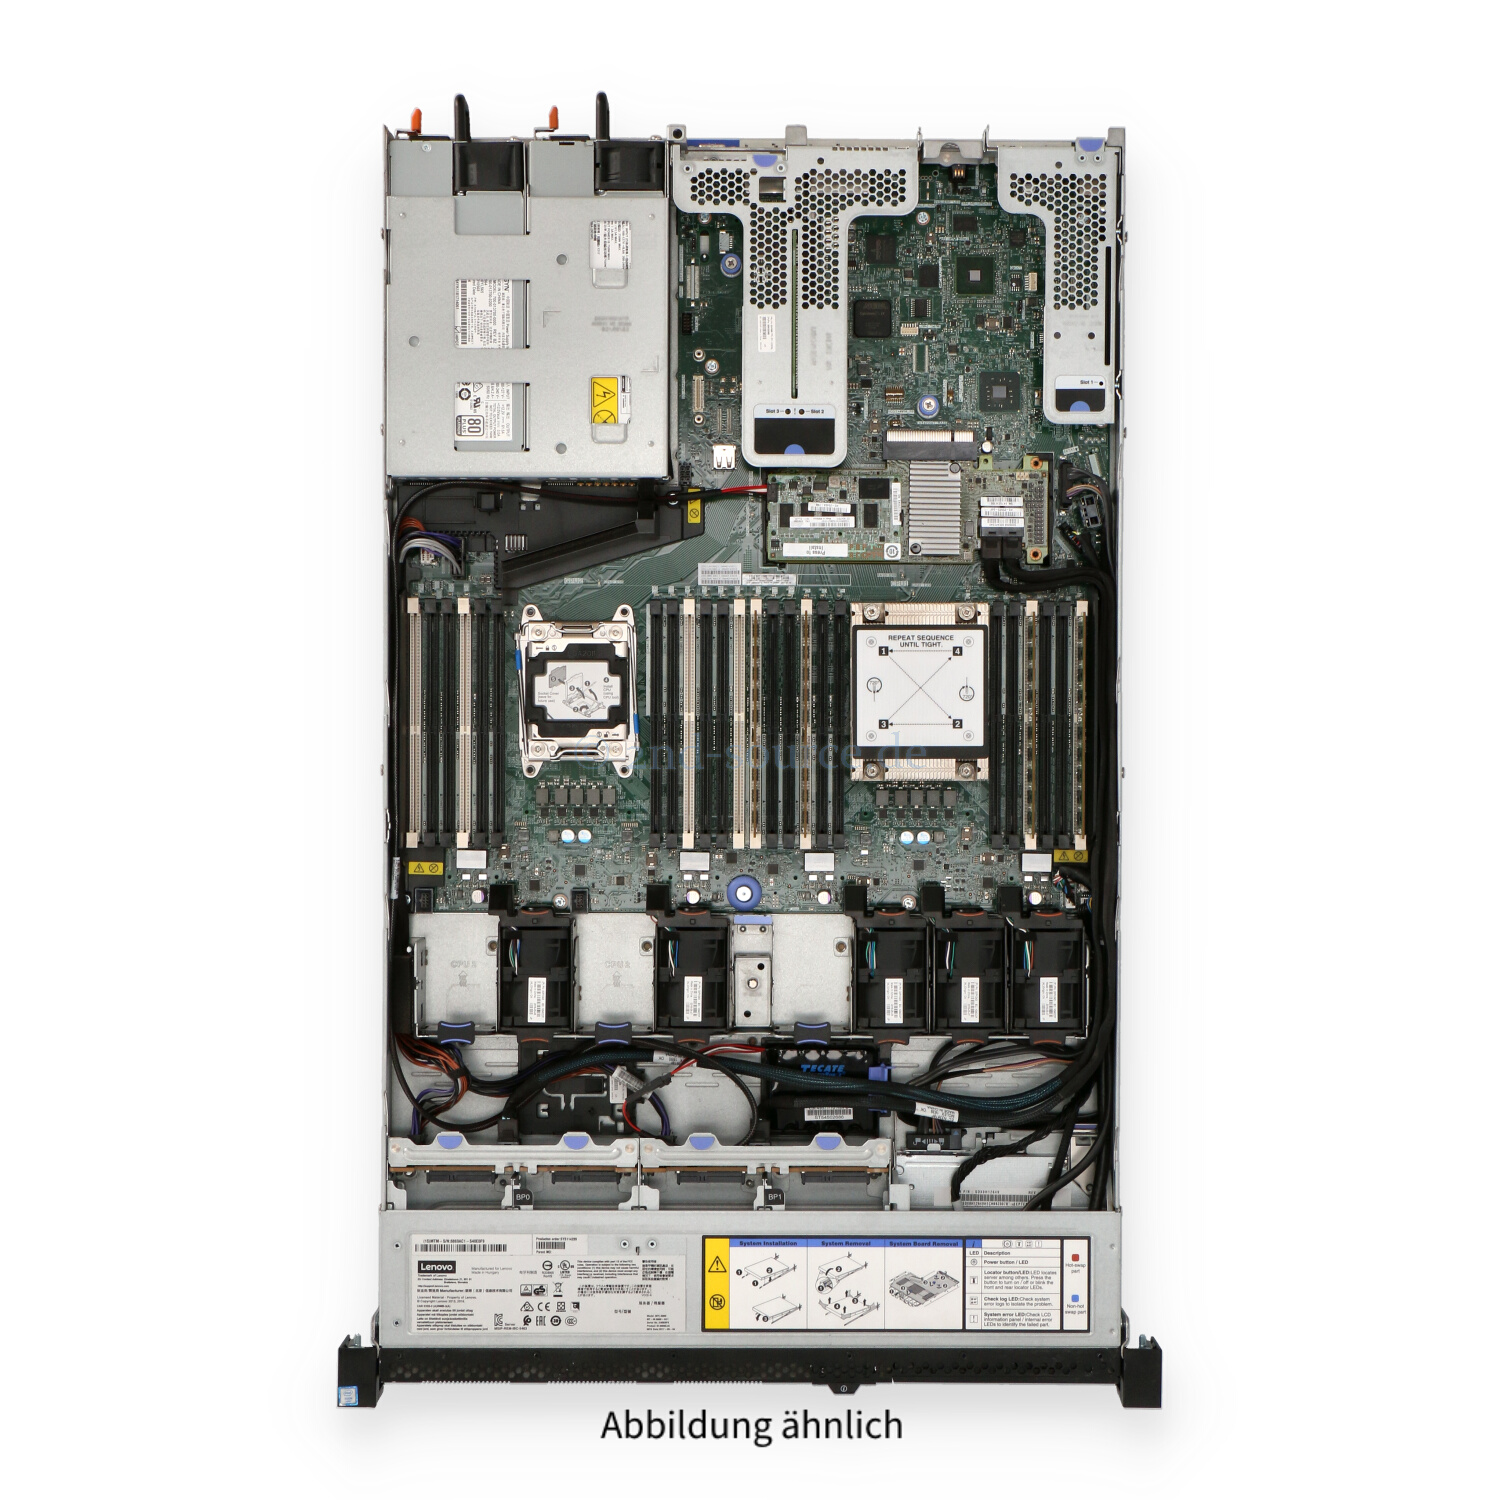 Lenovo System x3550 M5 8xSFF 1P E5-2630 v3 2.40GHz 8C 32GB M5210 2x 750W